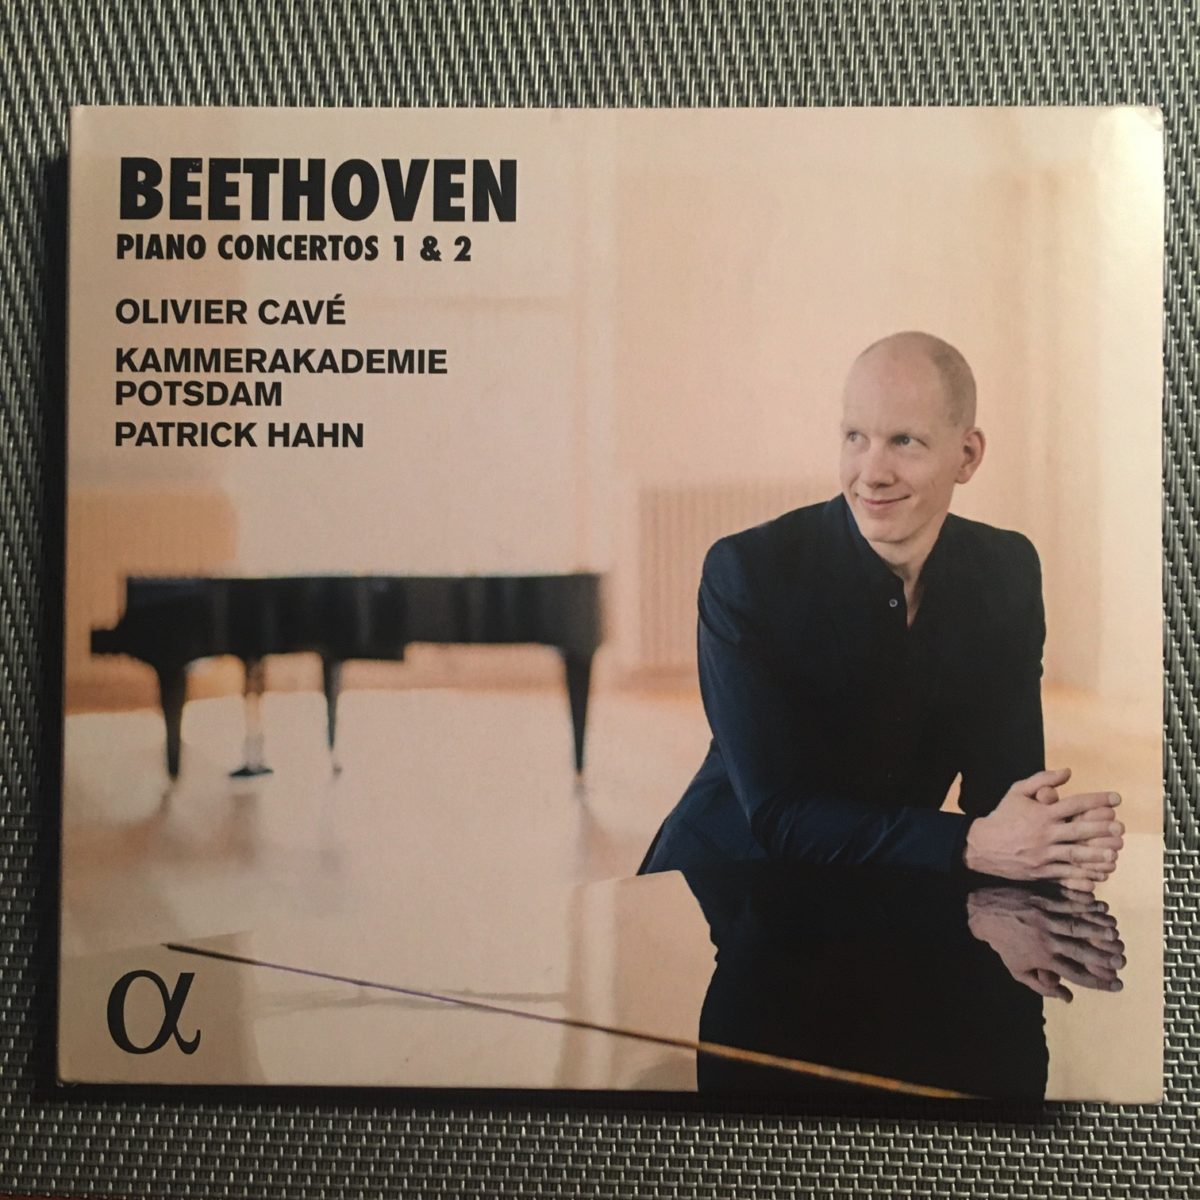 CD-Besprechung / Interview, Ludwig van Beethoven, Piano Concertos 1&2, Kammerakademie Potsdam, Patrick Hahn  klassik-begeistert.de, 12. Dezember 2020